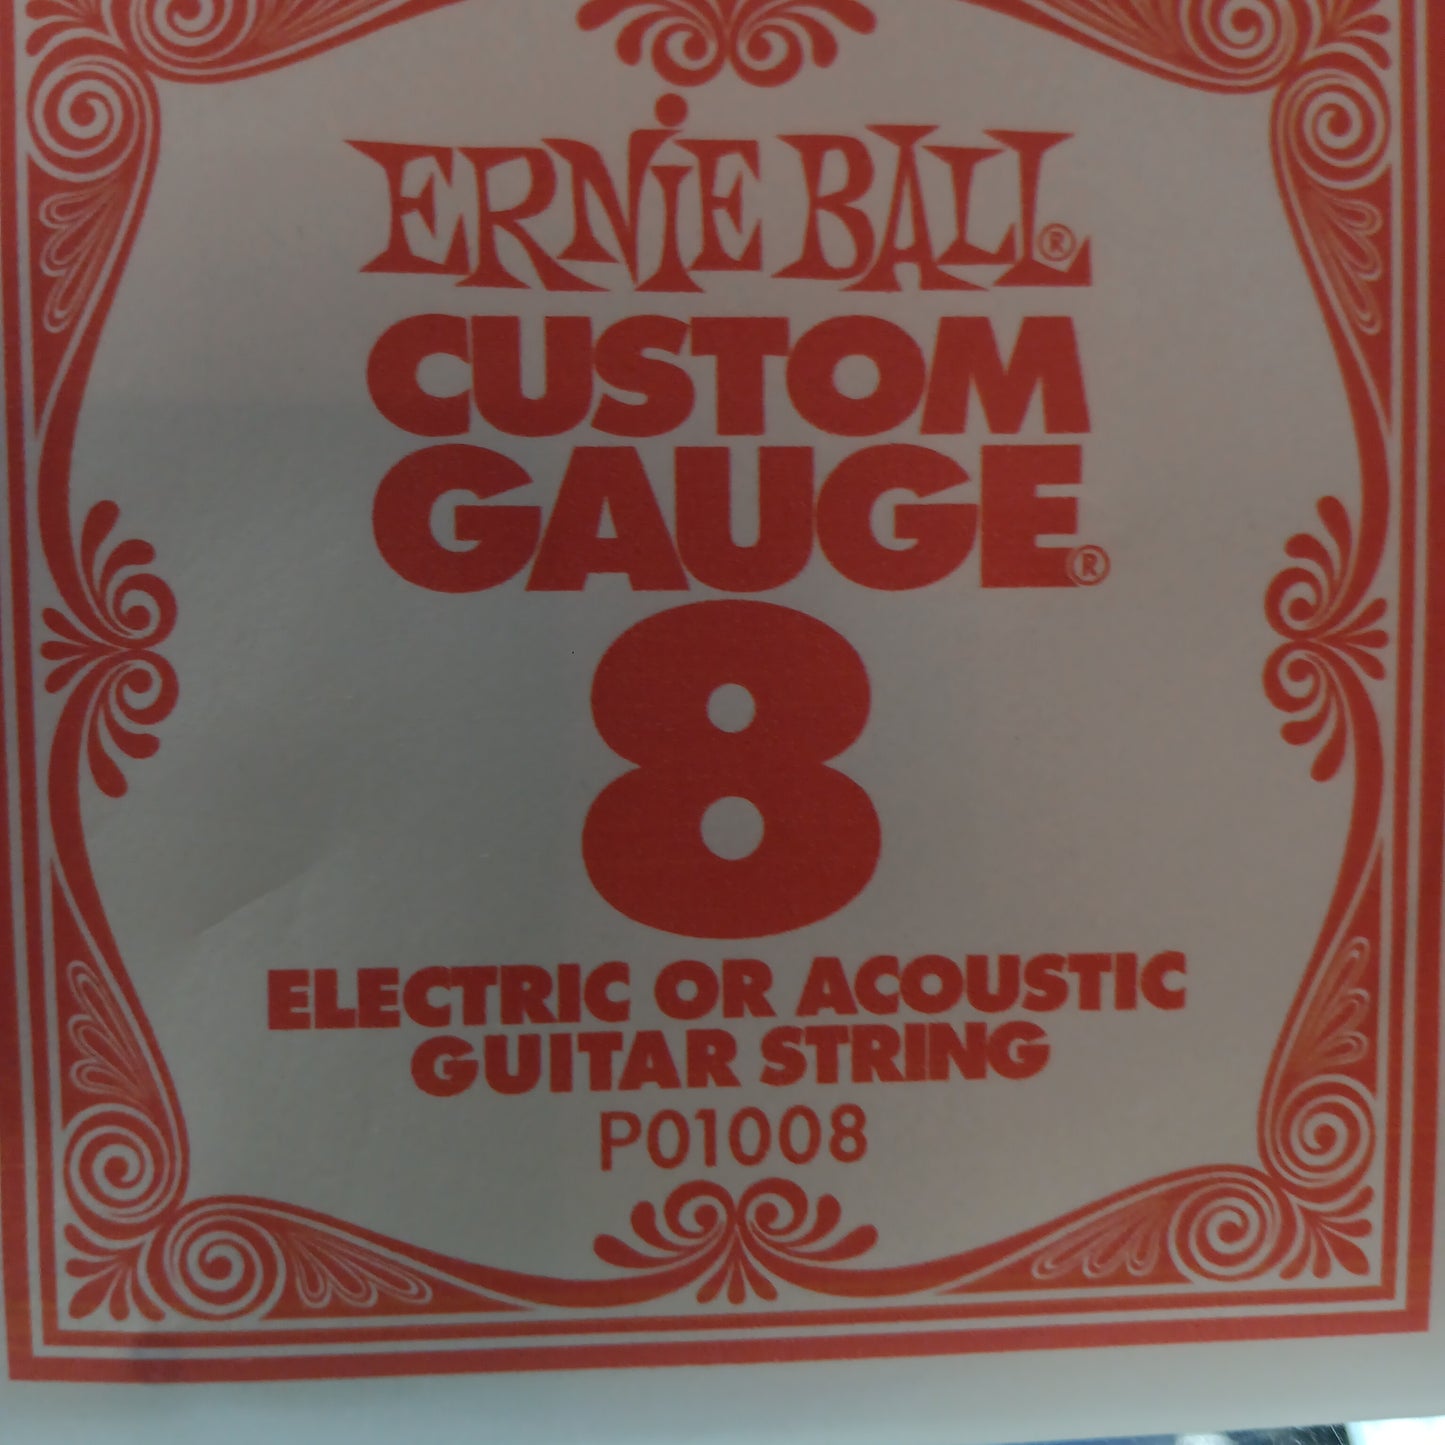 Ernie Ball Custom Gauge Nickel Wound Single Strings PO1008/ 8 Gauge